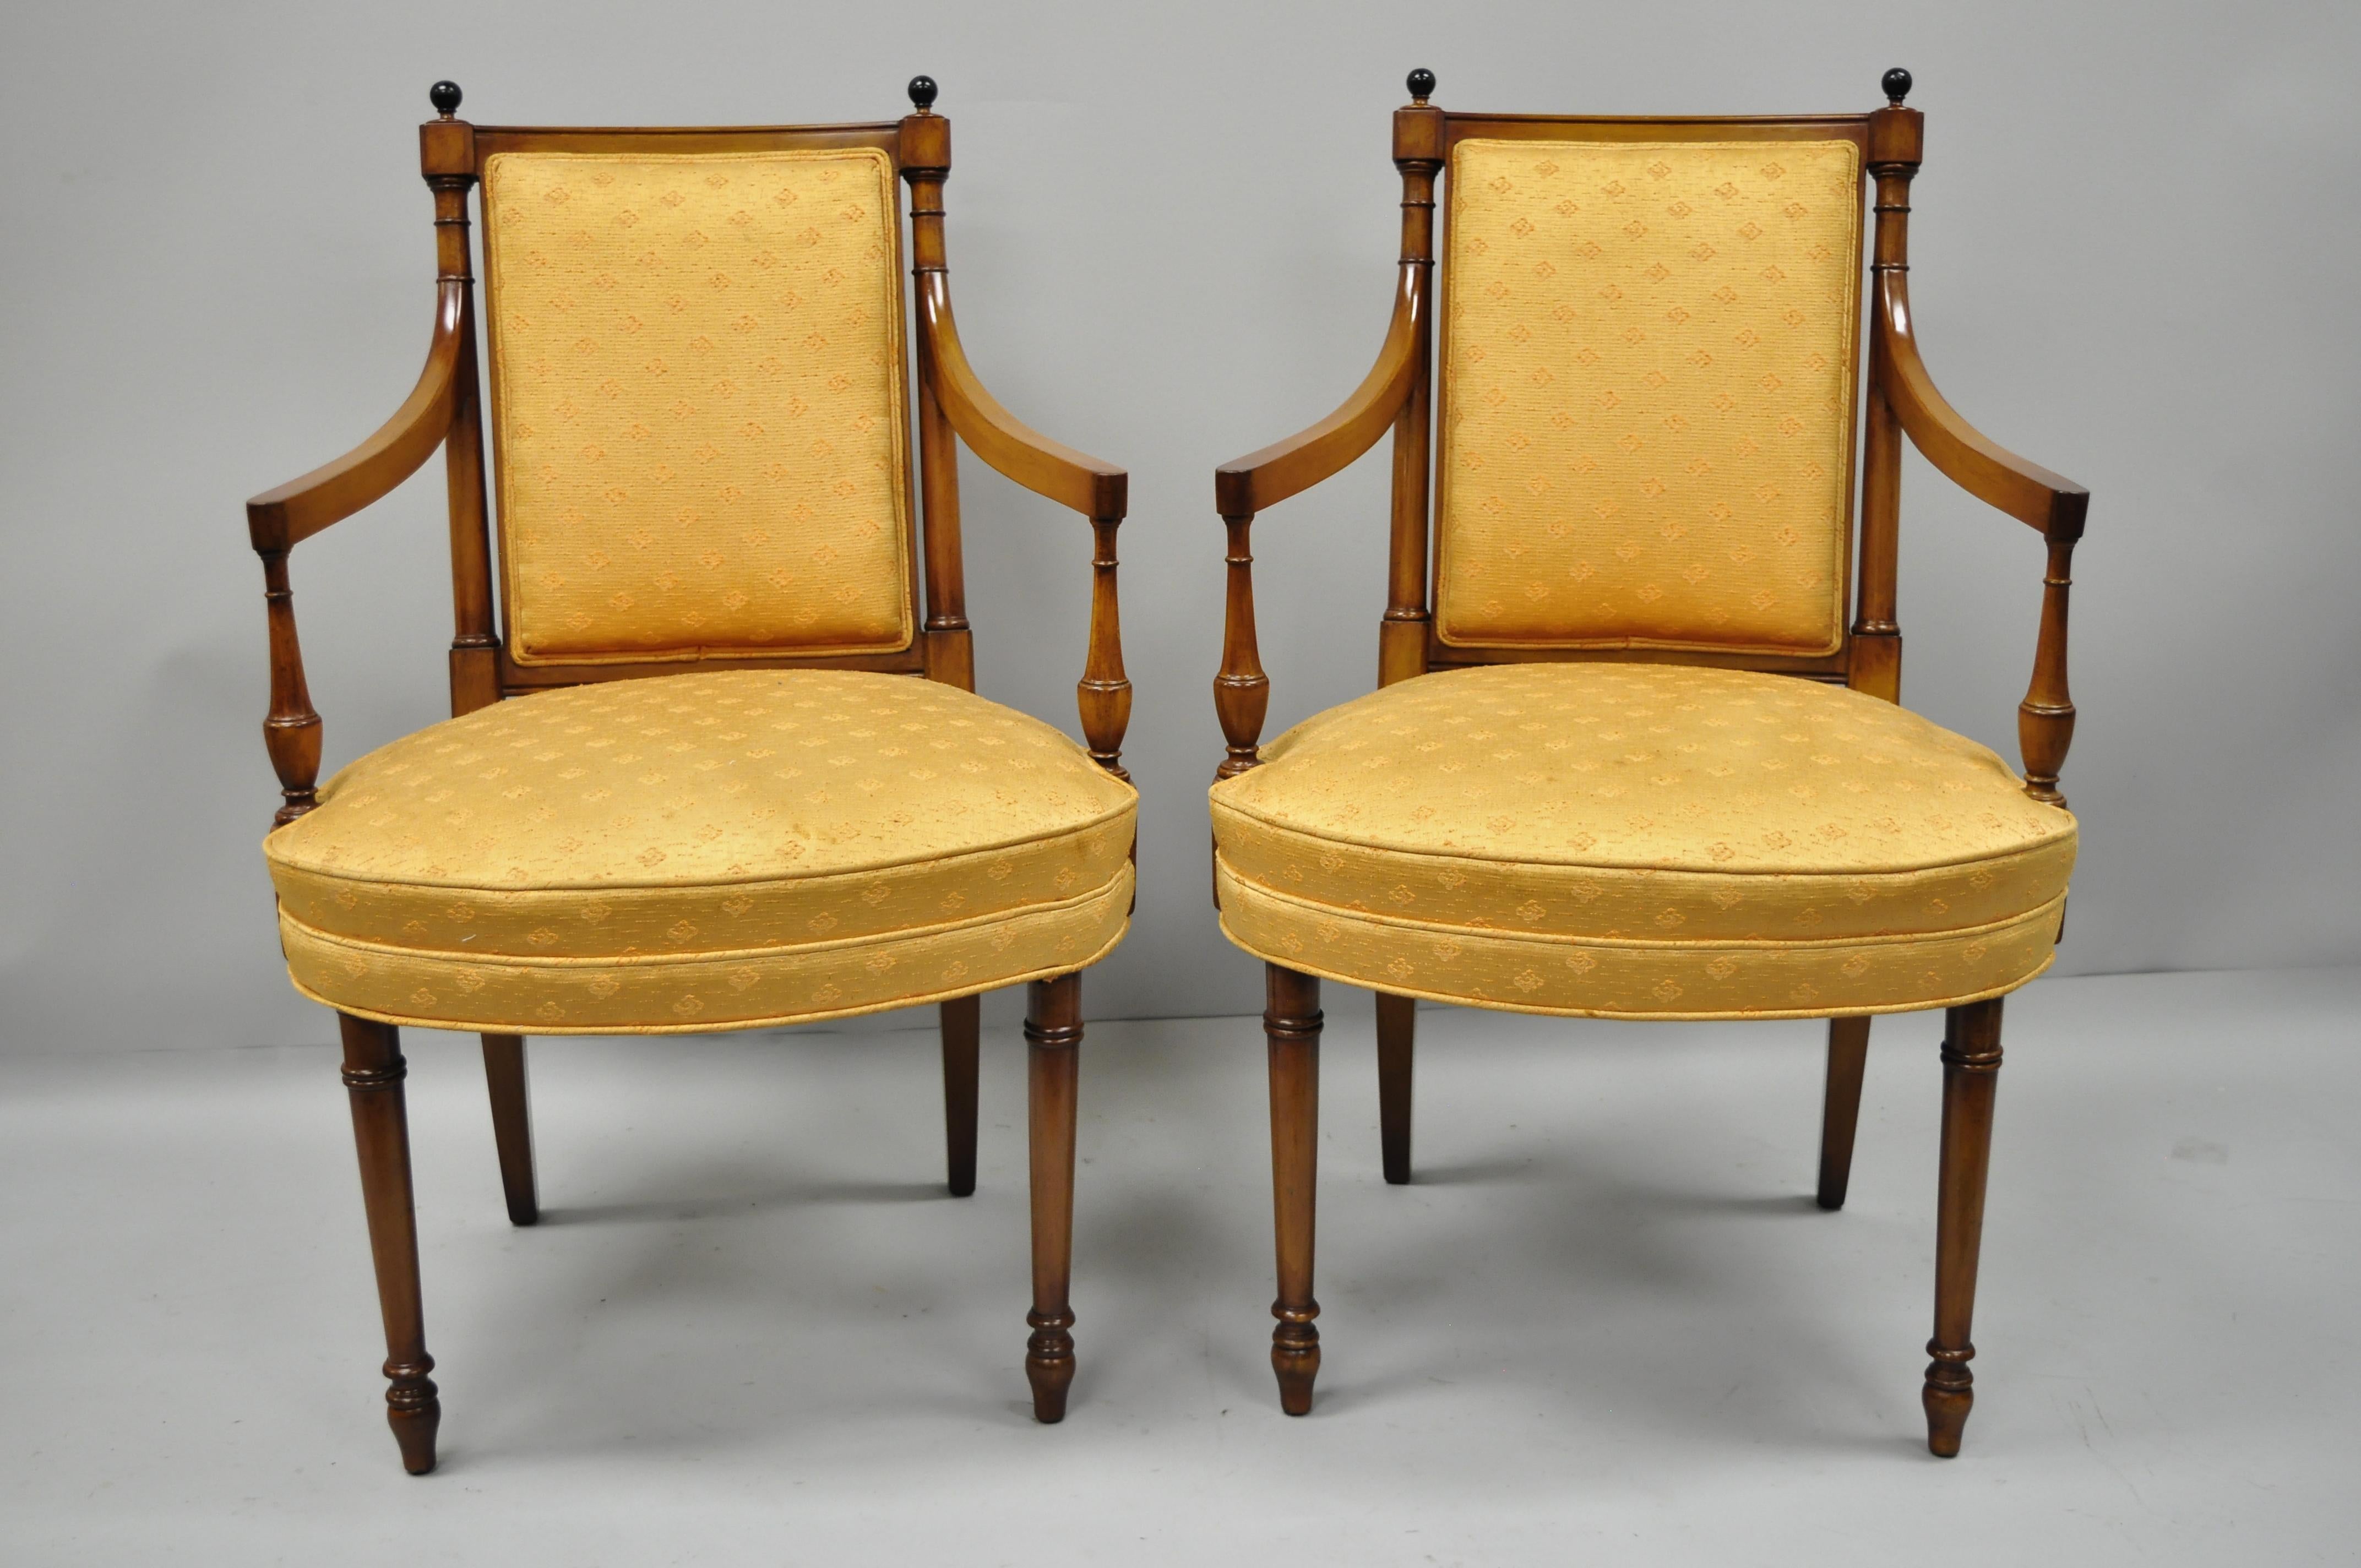 Satz von acht Esszimmerstühlen Maslow Freen aus Mahagoni. Das Angebot umfasst sechs Beistellstühle, zwei Sessel, hölzerne kugelförmige Endstücke, schöne breite Sitze, solide Holzkonstruktion und hochwertige amerikanische Handwerkskunst, ca. 1940er